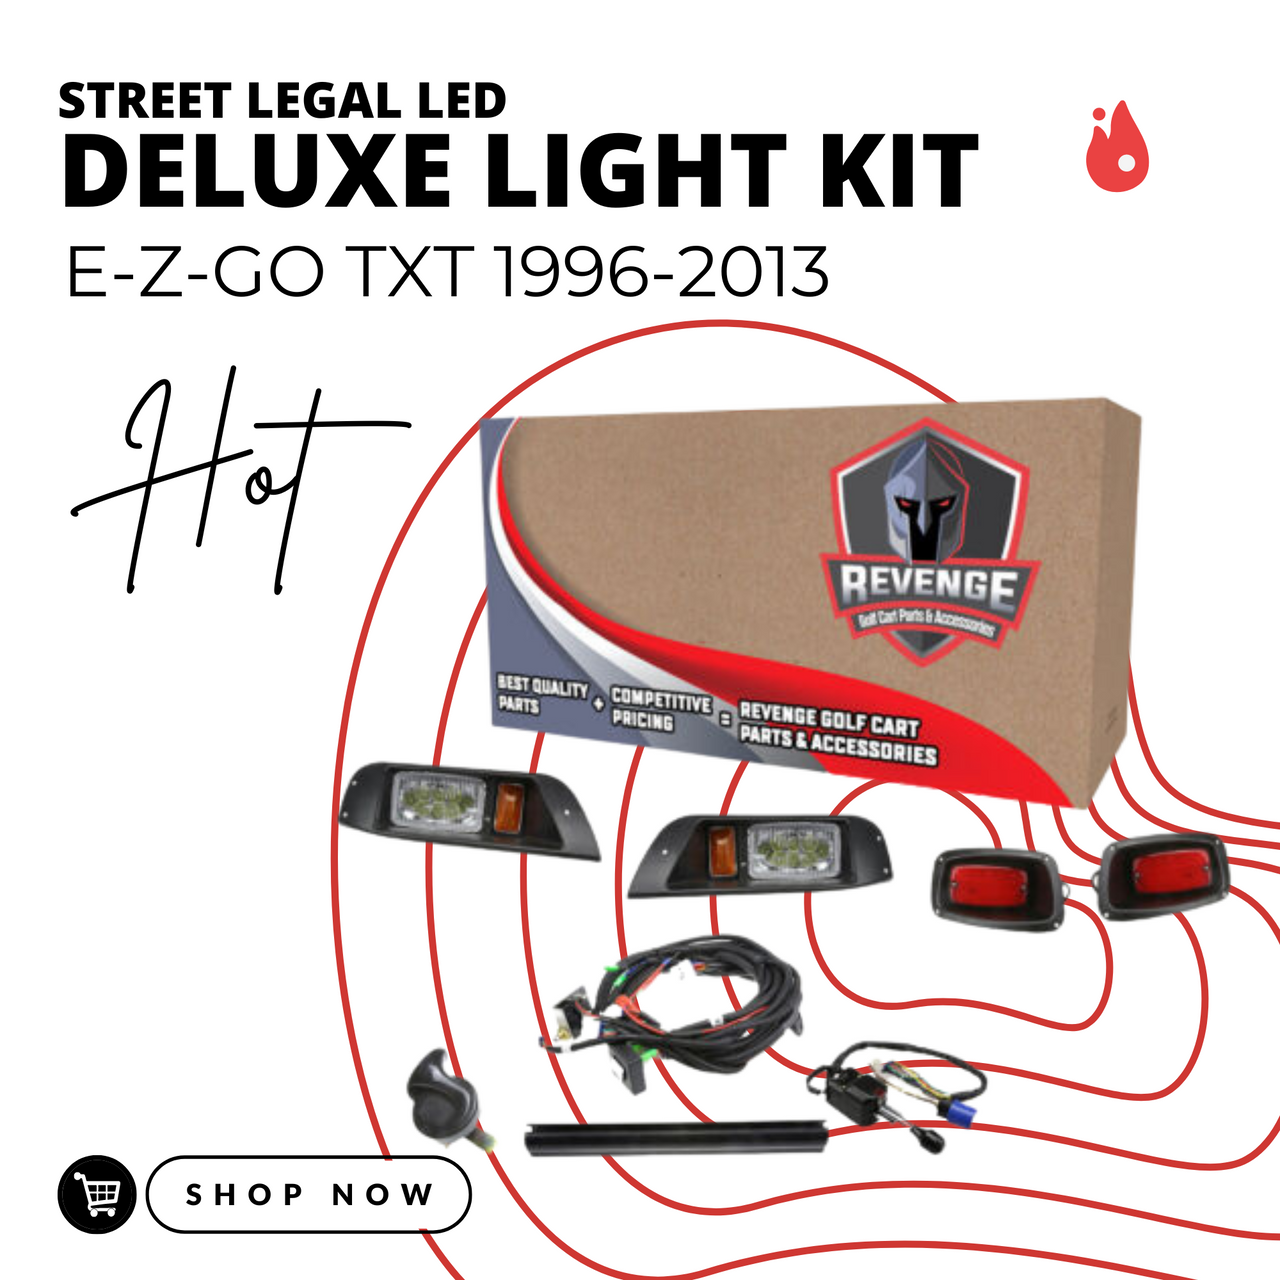 Revenge E-Z-GO TXT LED Deluxe Street Legal Golf Cart Light Kit 1996-2003, LIGHT-L0002KLDKO-D1-X1